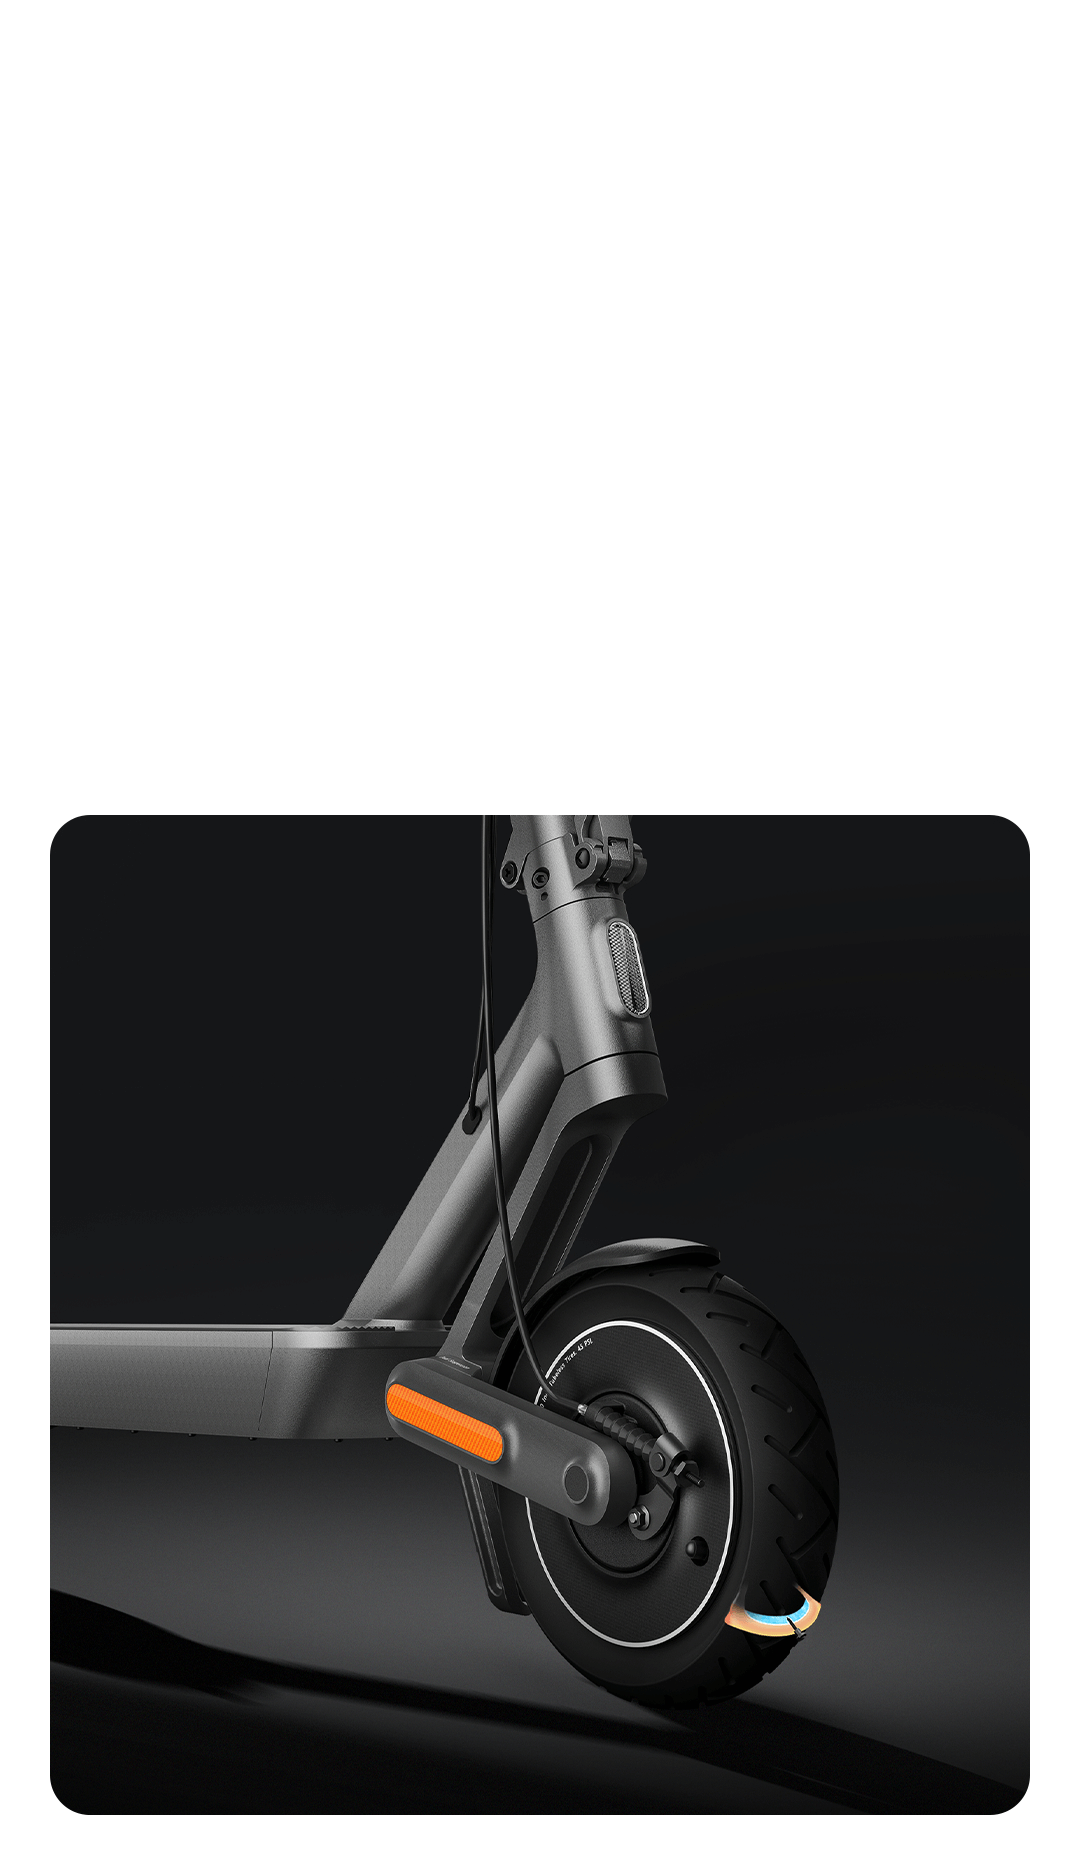 Trottinette Et Equipement - Limics24 - Fil Spirale Scooter Xiaomi